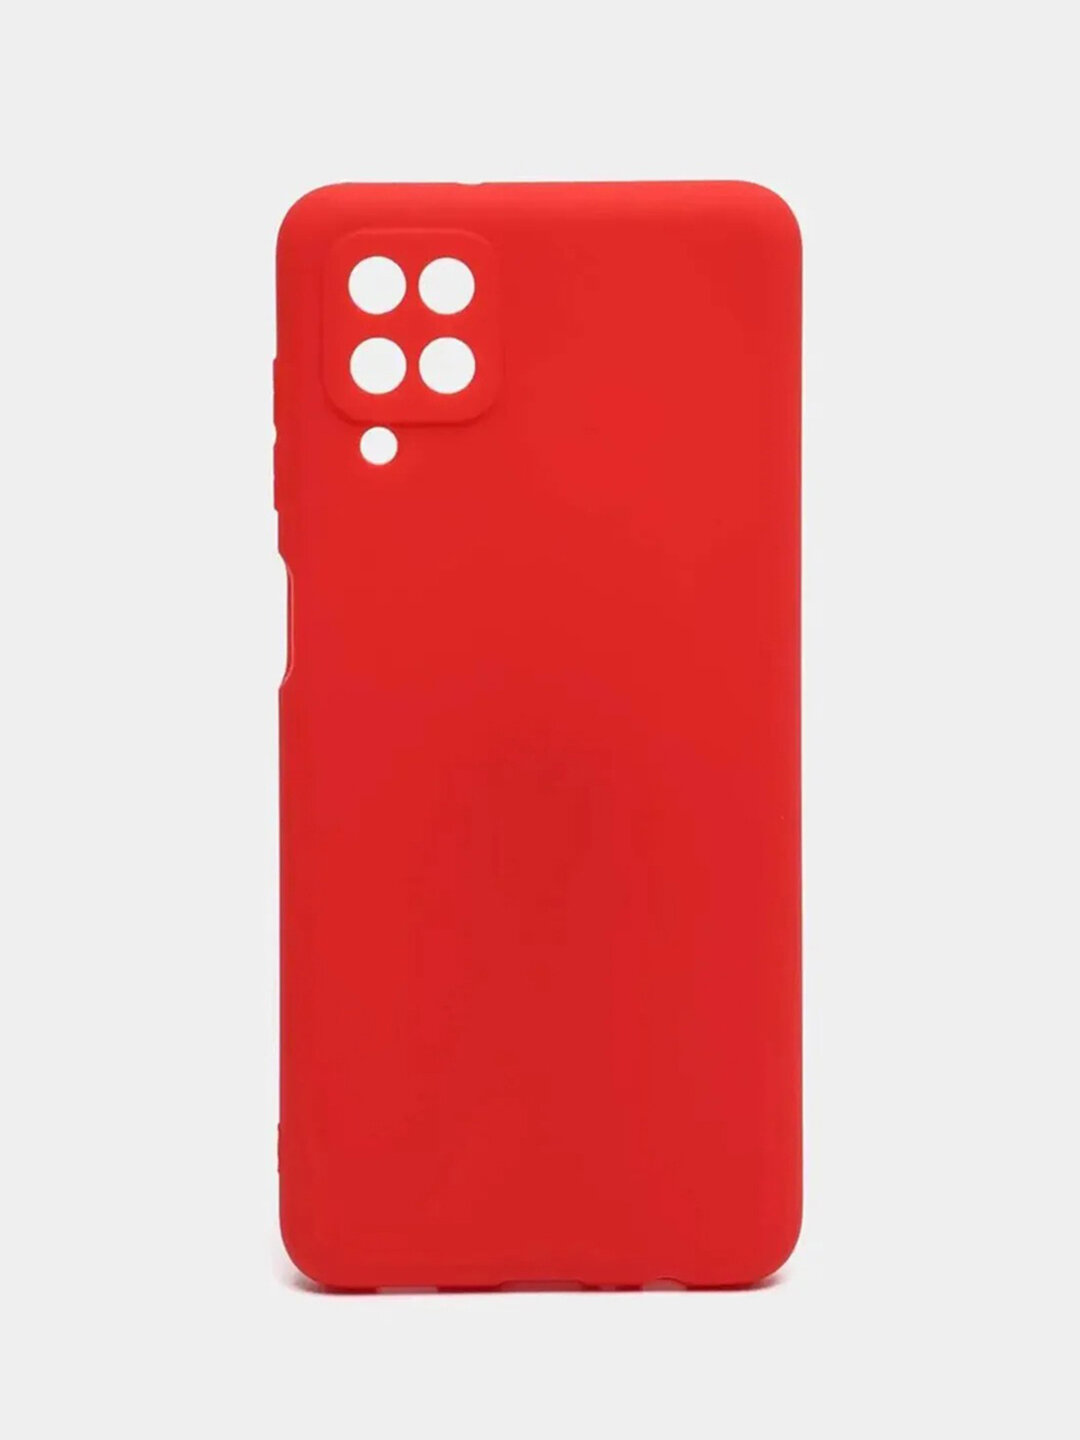 Чехол для Samsung Galaxy A12 / M12 (Самсунг А12 / М12), силиконовый, красный